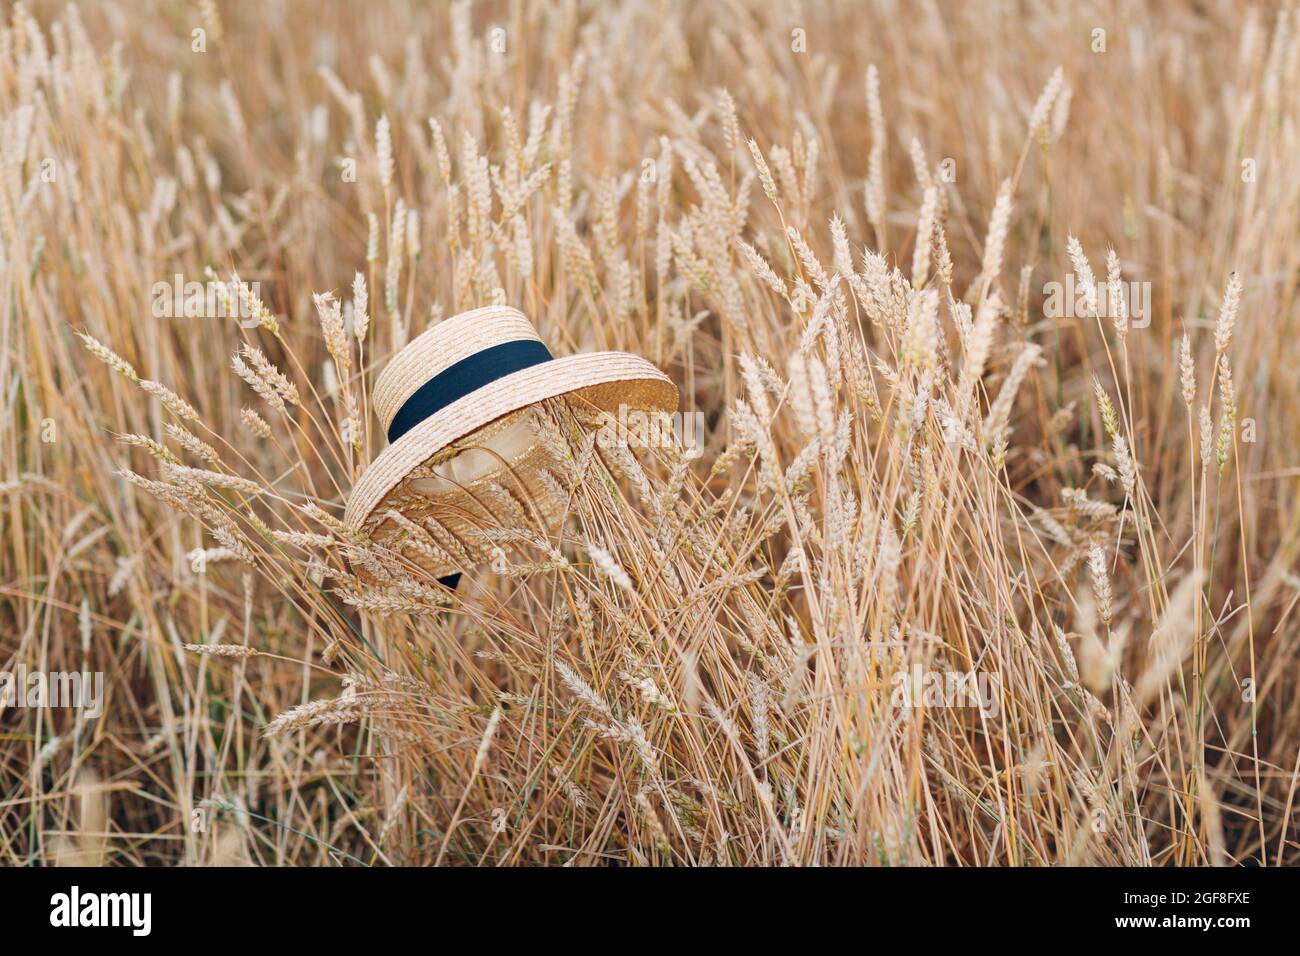 Straw hat in ears of wheat field Stock Photo